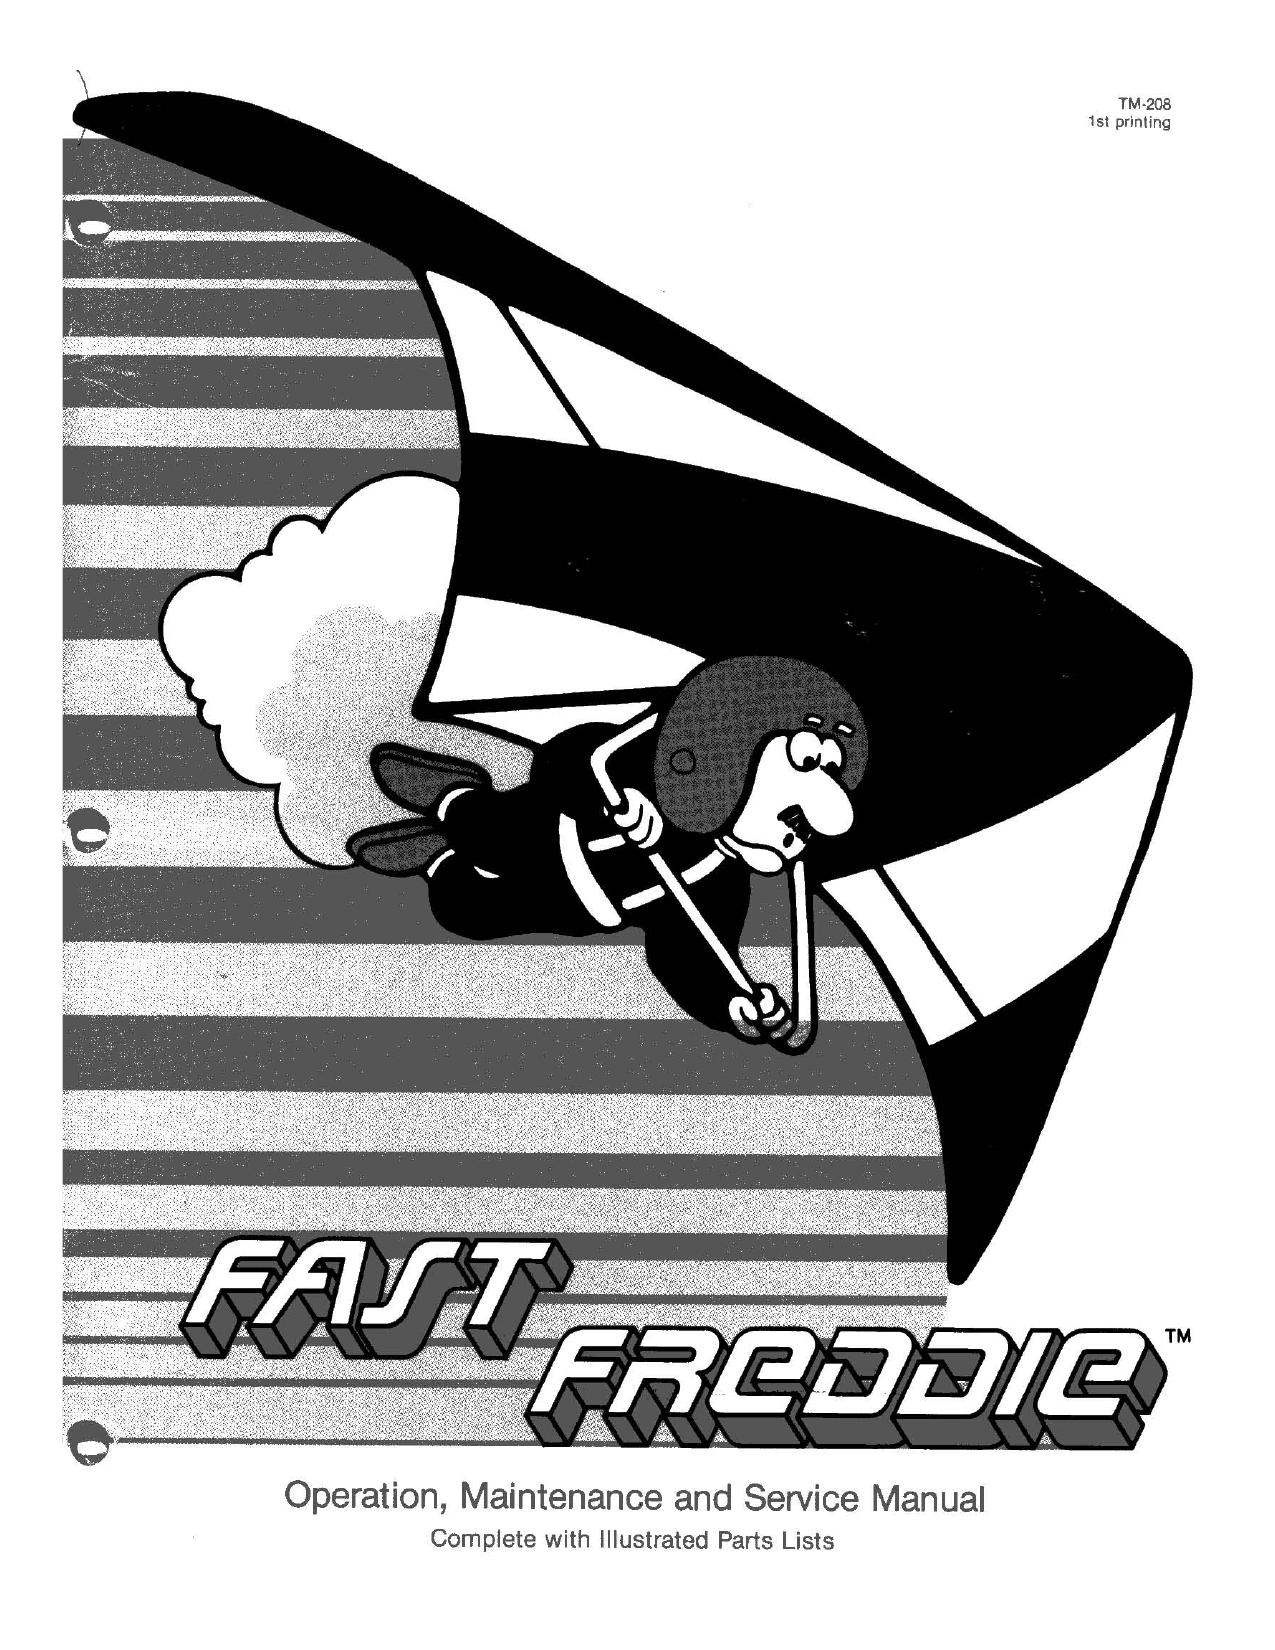 Fast Freddie (TM-208 1st Printing) (Op-Maint-Serv-Part) (U)